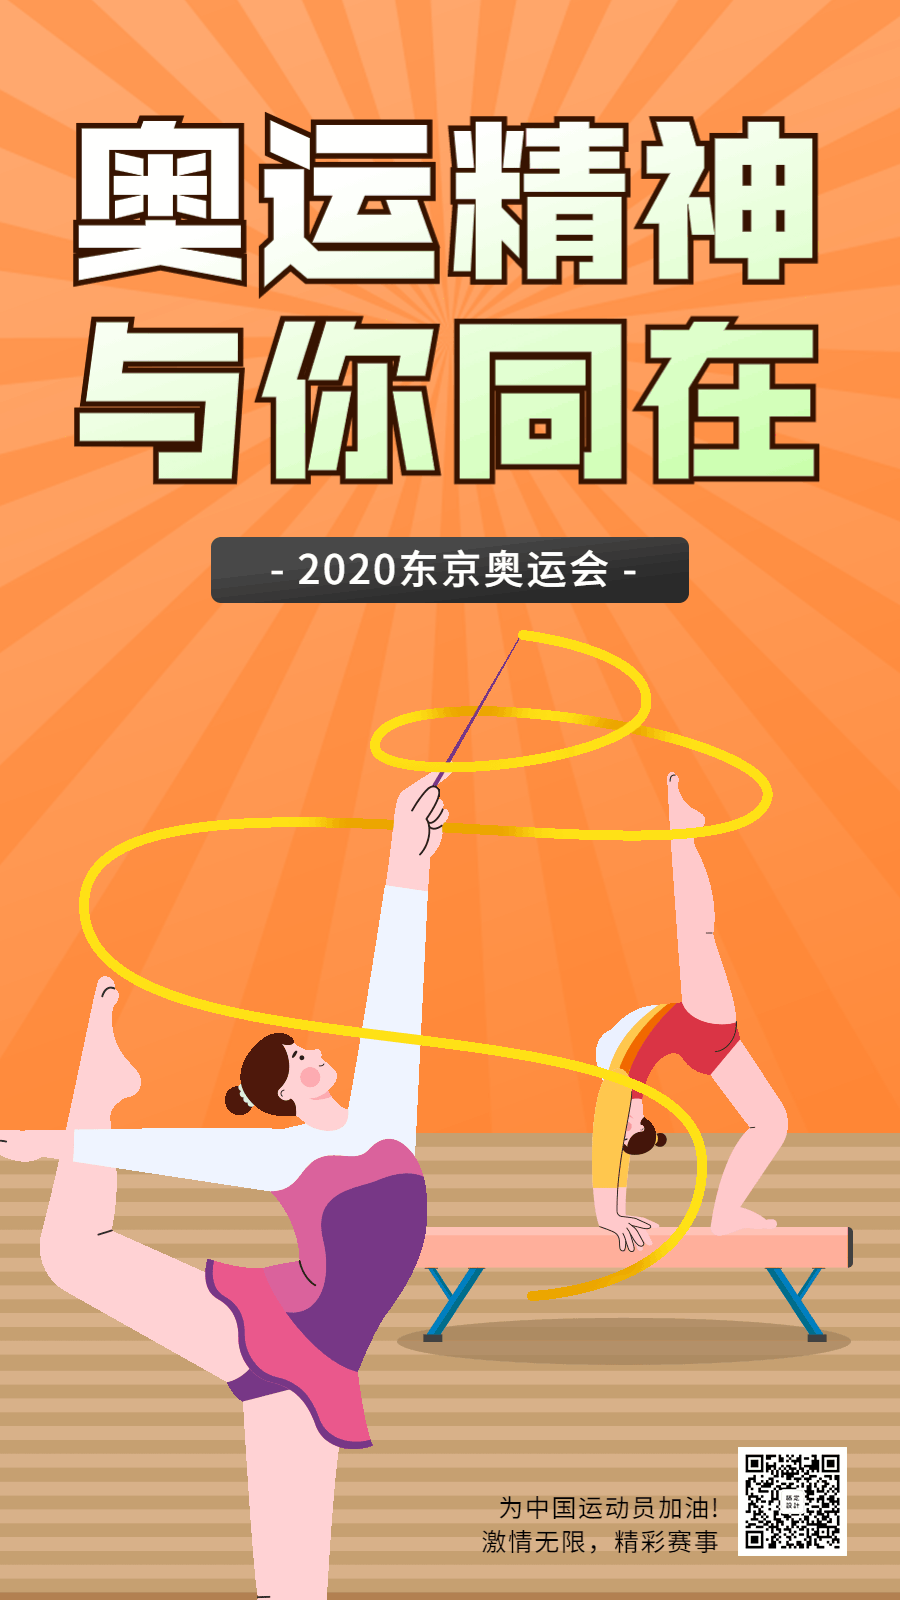 东京奥运会加油祝福GIF手机海报